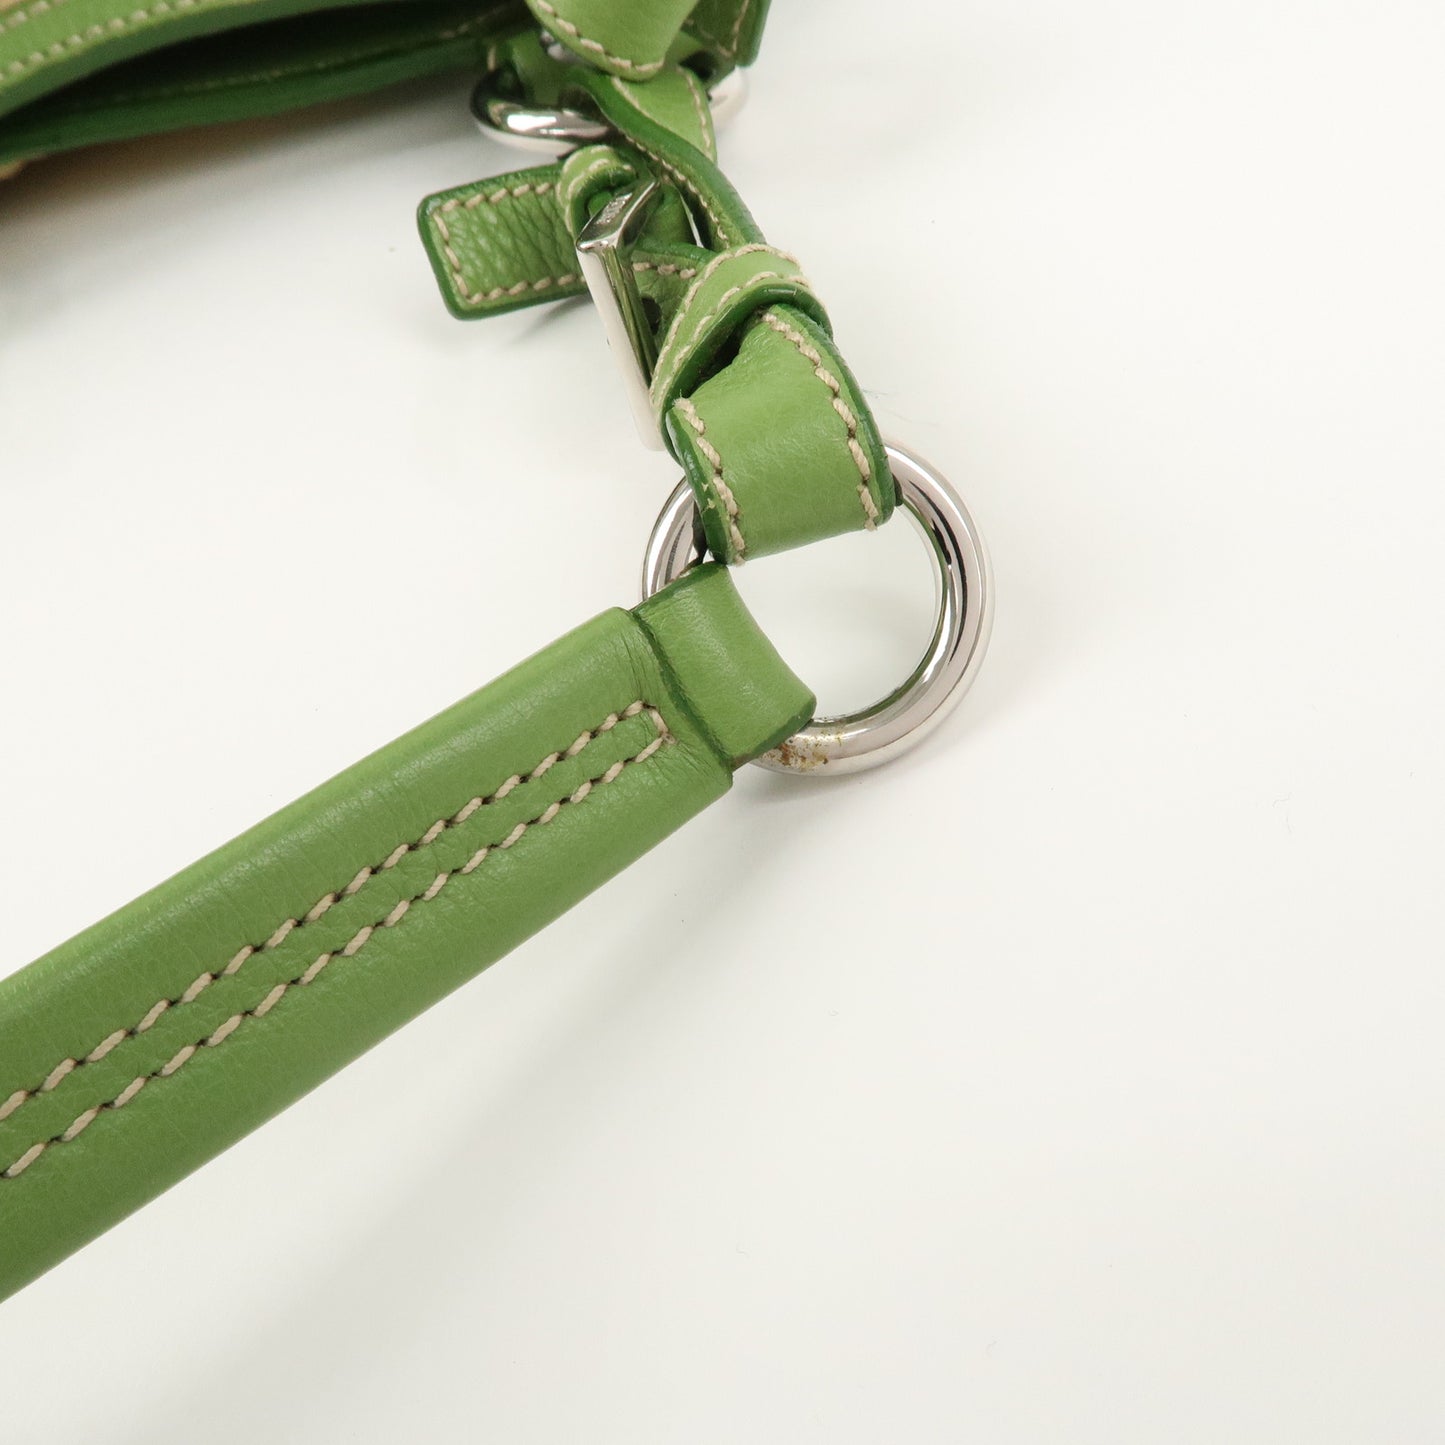 PRADA Straw Leather Shoulder Bag Natural Green BR2928